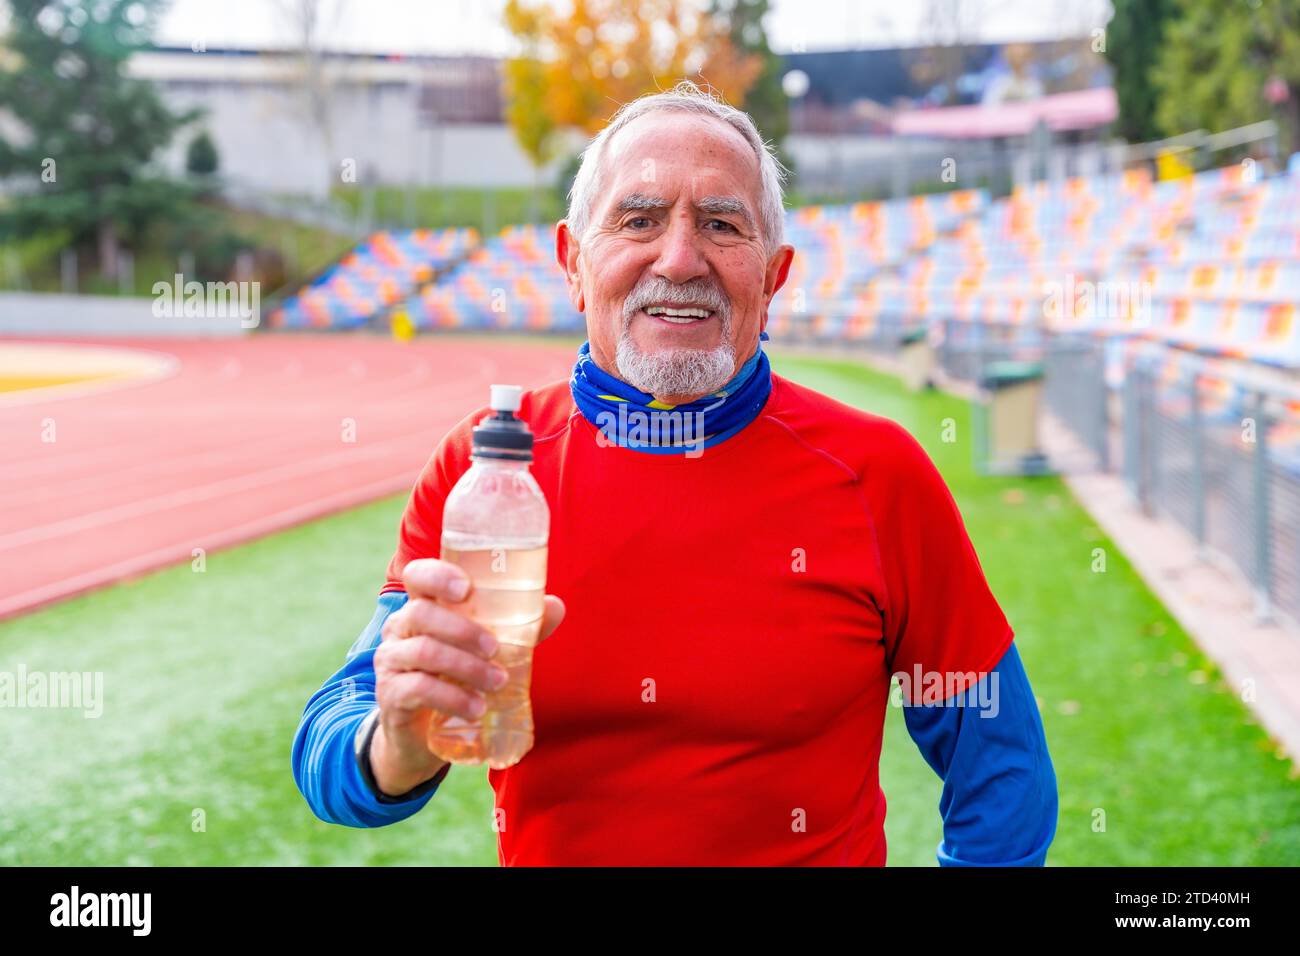 Fier vieil homme avec une bouteille d'eau réutilisable après l'exercice dans une piste et le champ Banque D'Images